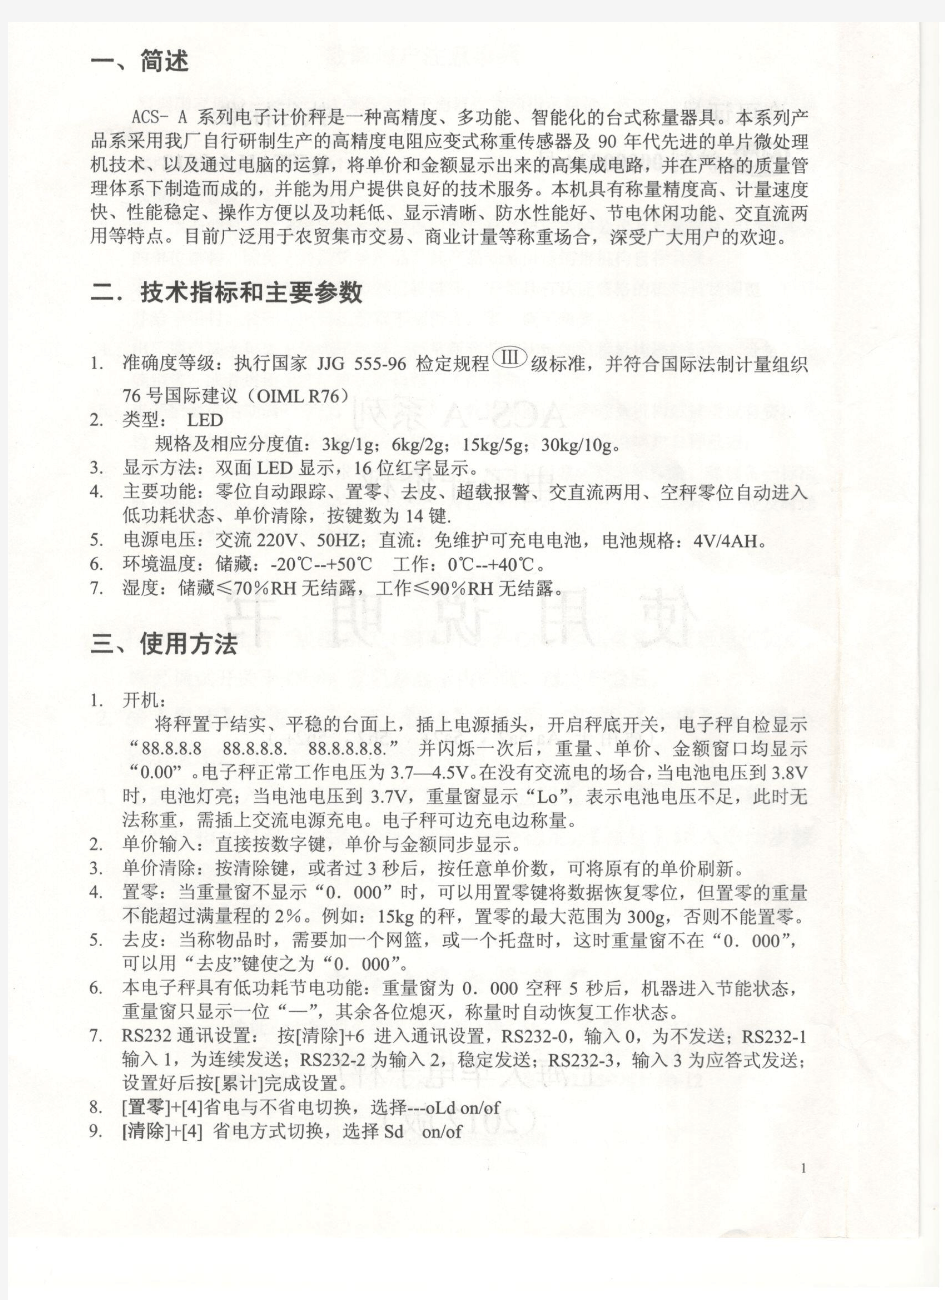 上海大华-电子计价秤-ACS-A系列-使用说明书